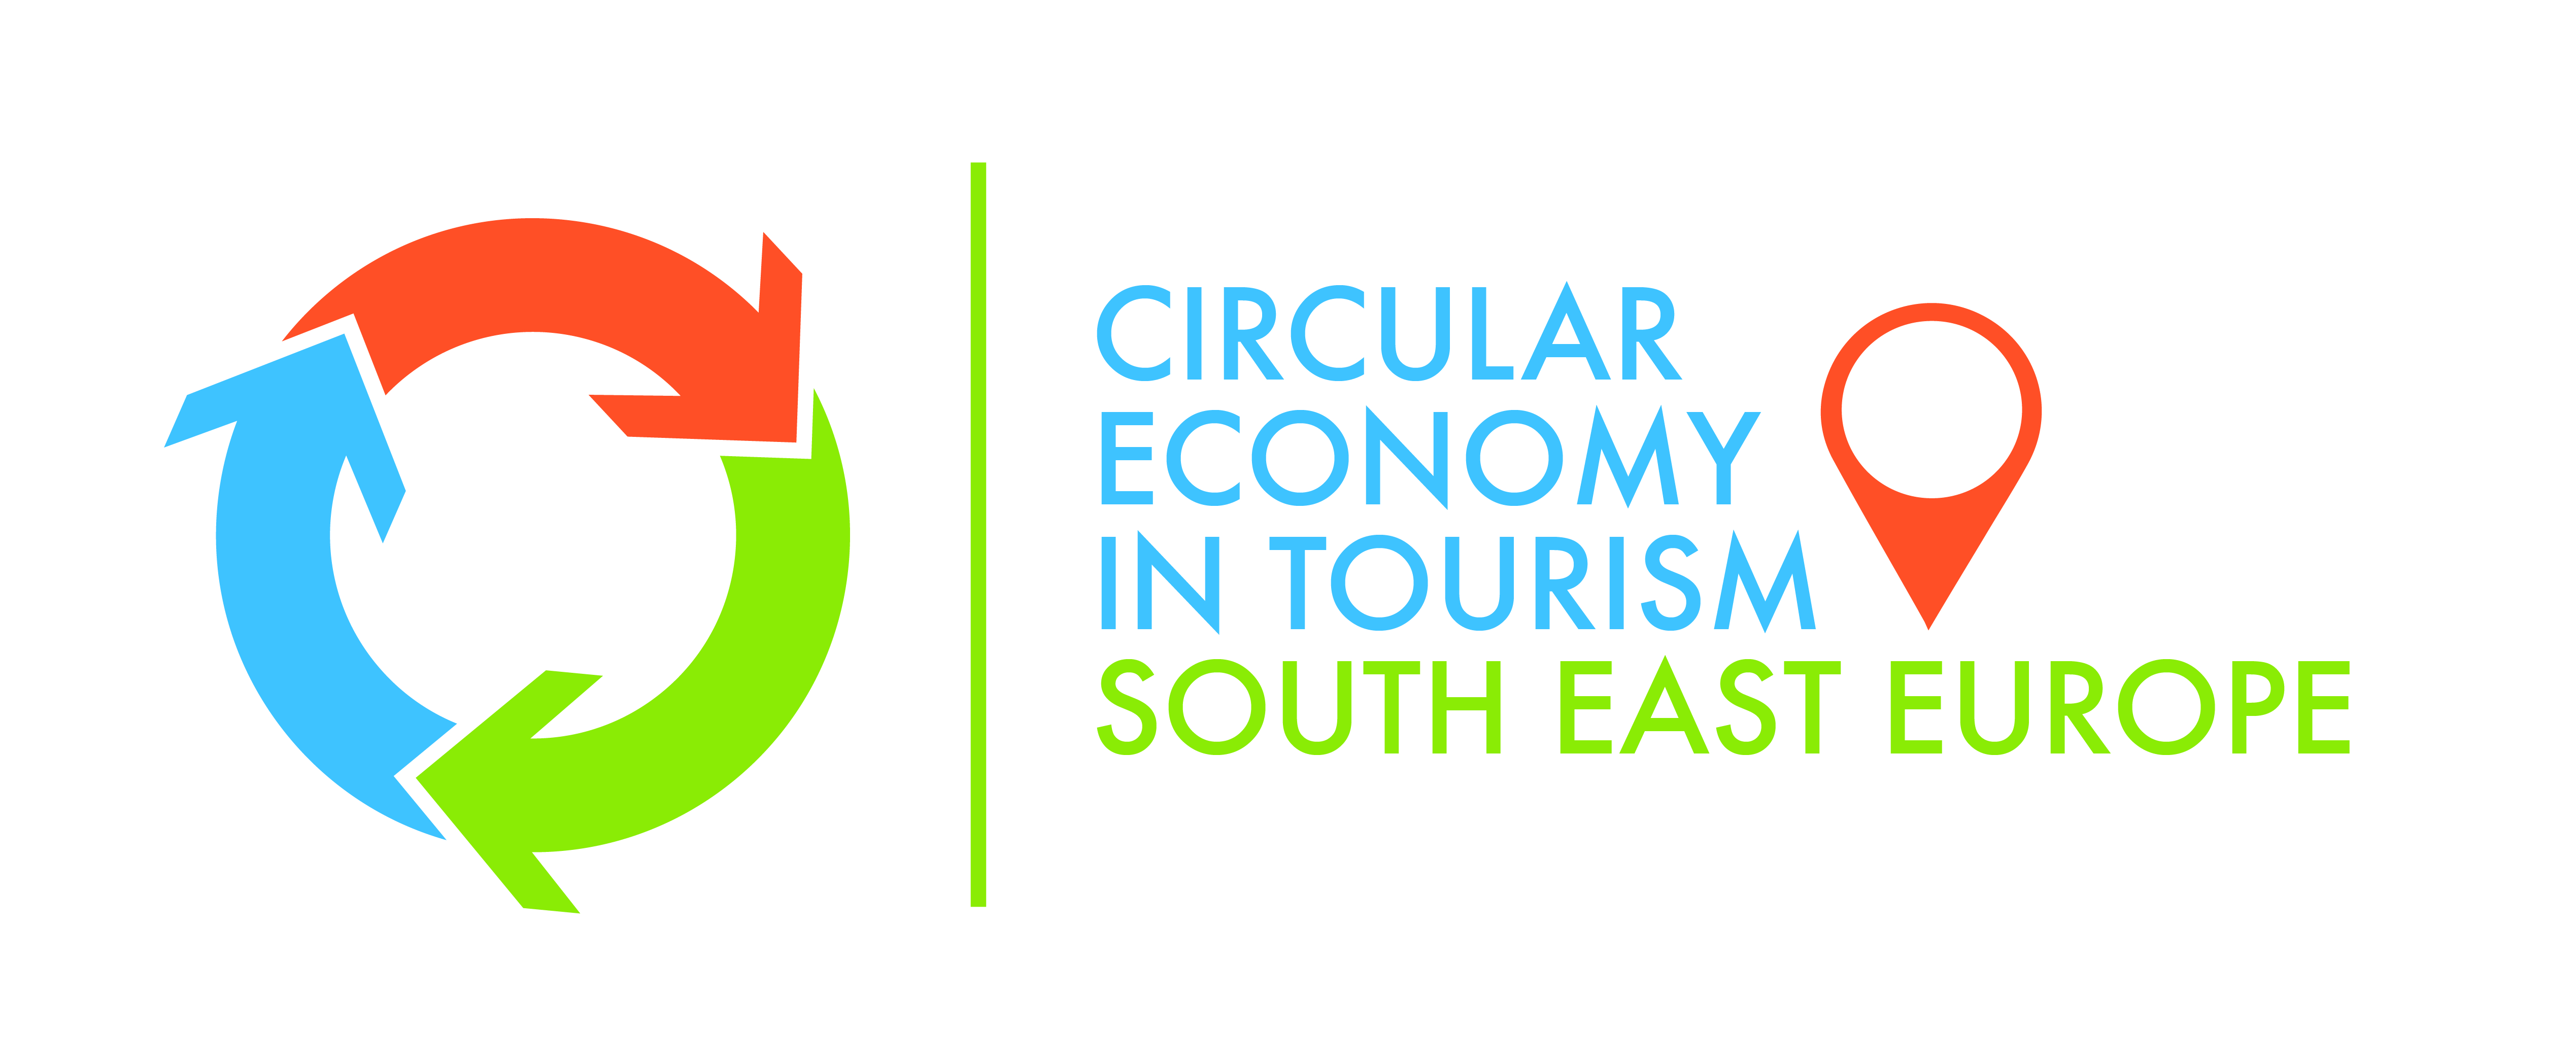 Tourism economy. Circular economy. Circular economy logo. Tourism in economy. Circular economy in Kyrgyzstan.